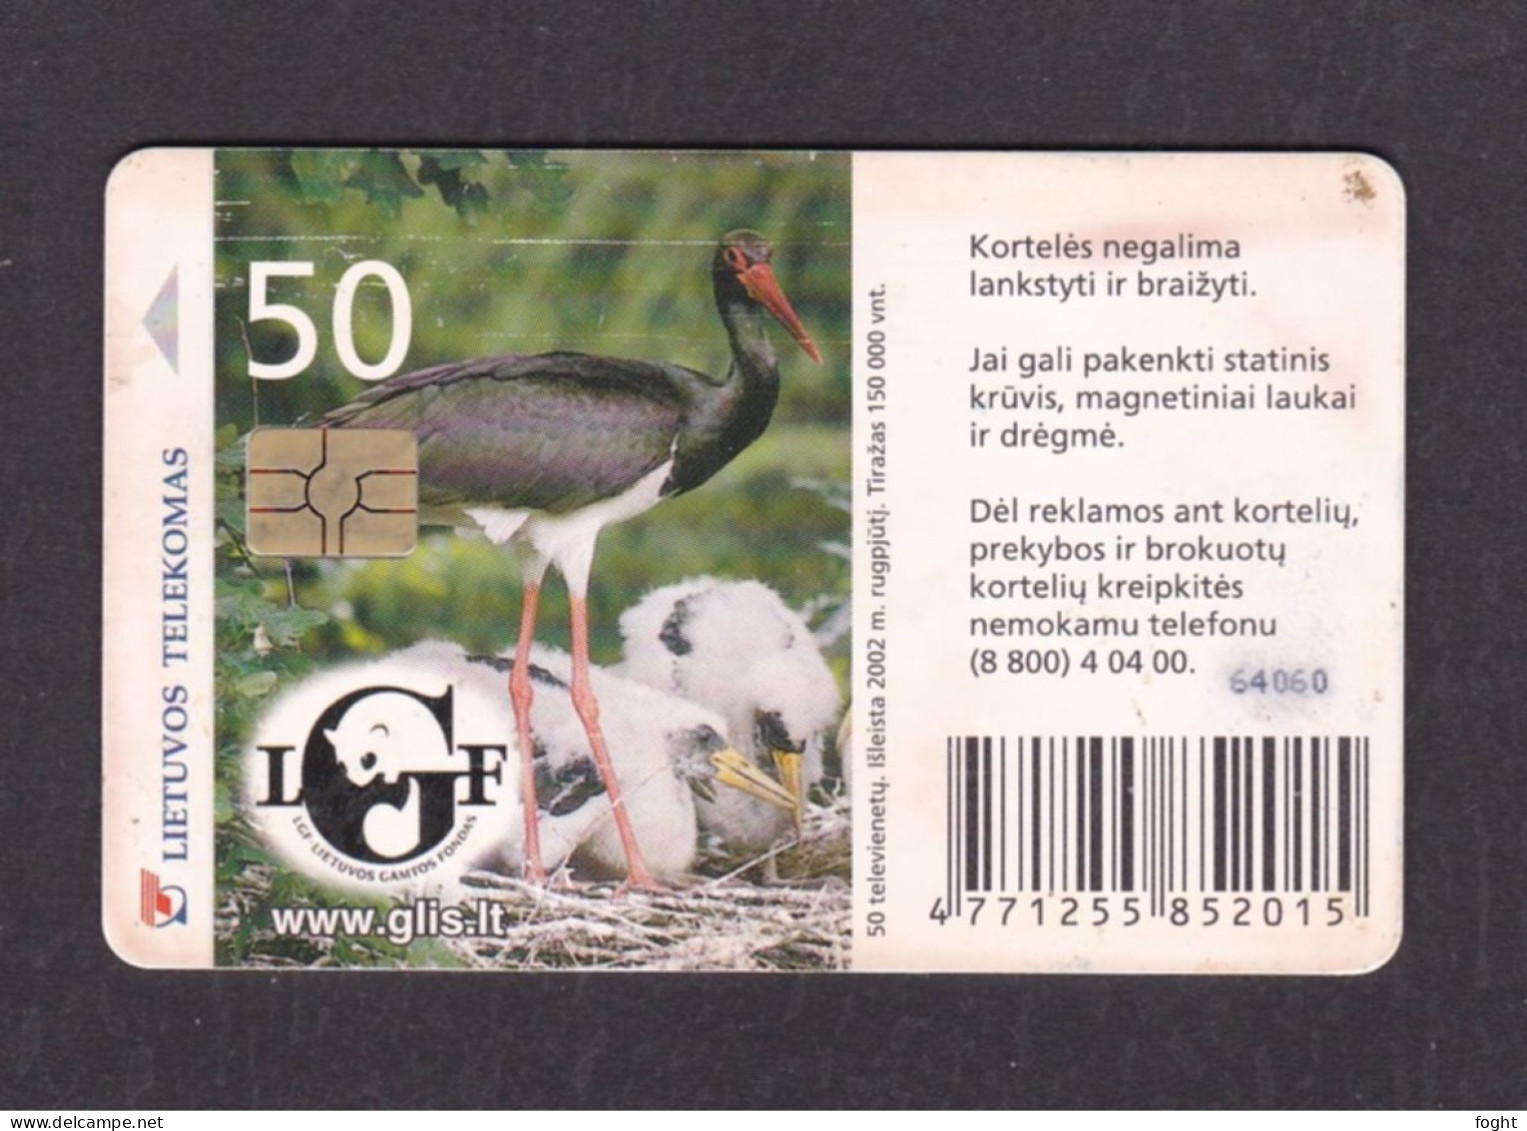 2002 Lithuania 50 Tariff Units Telephone Card - Lithuania